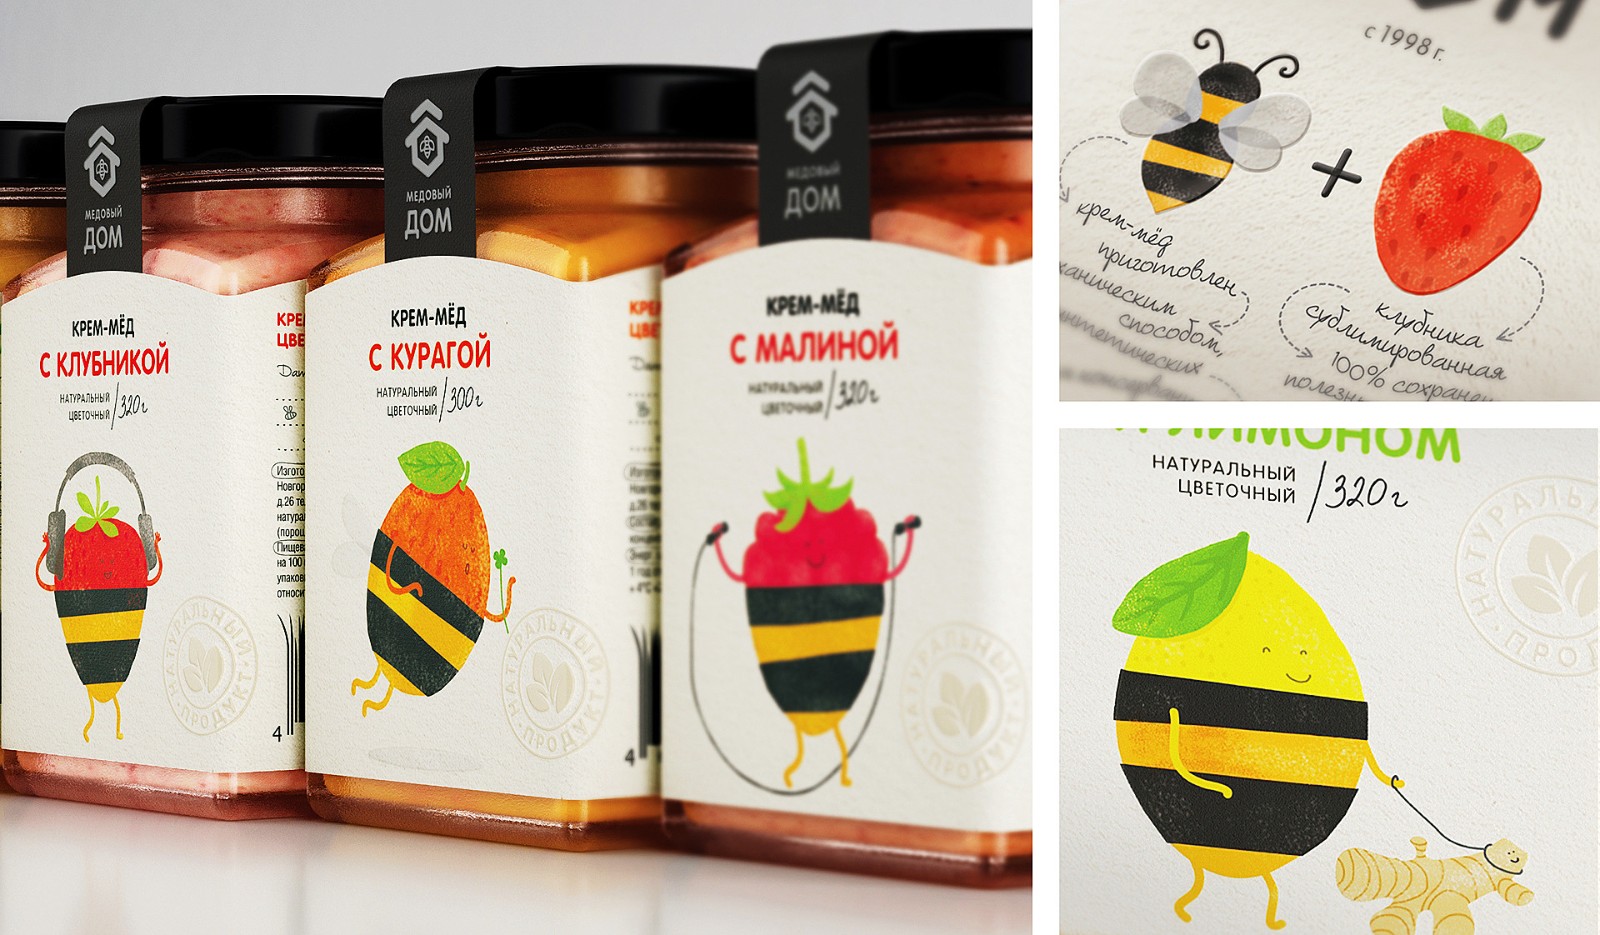 俄罗斯蜂蜜包装设计作品赏析 